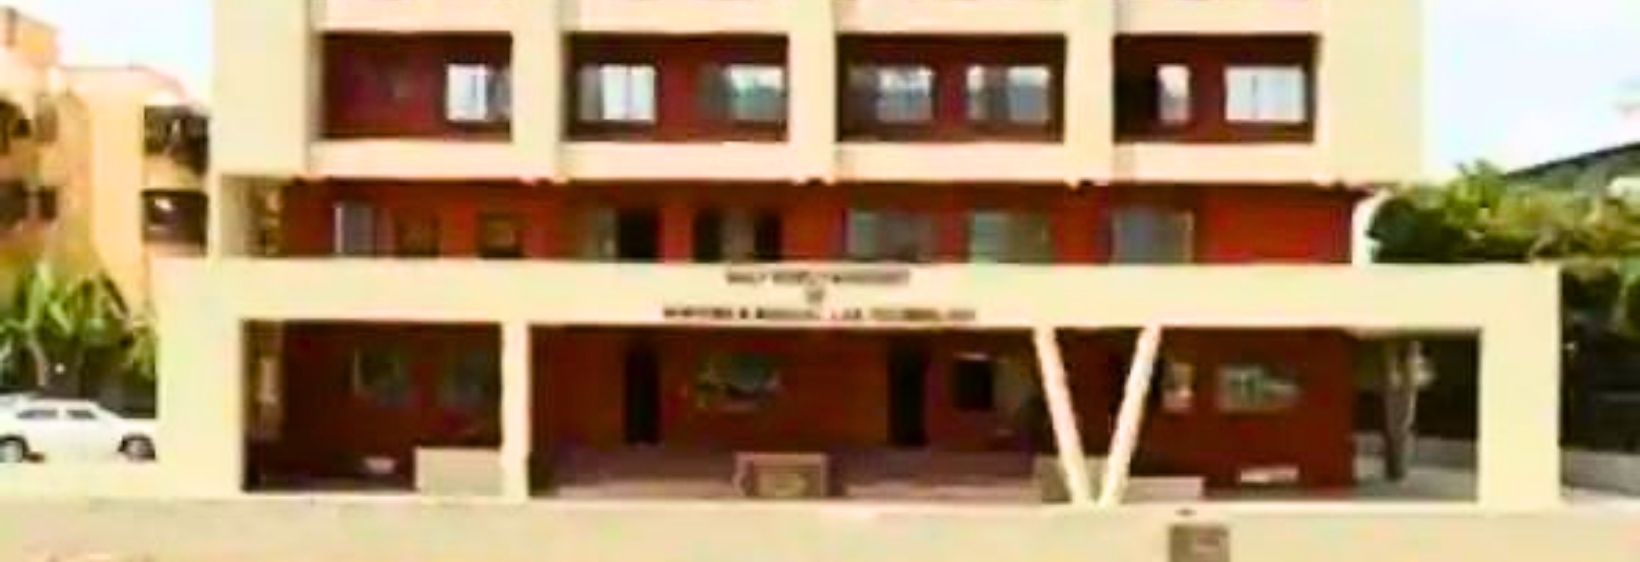 Bandra Holy Family Institute of Nursing Education - Mumbai